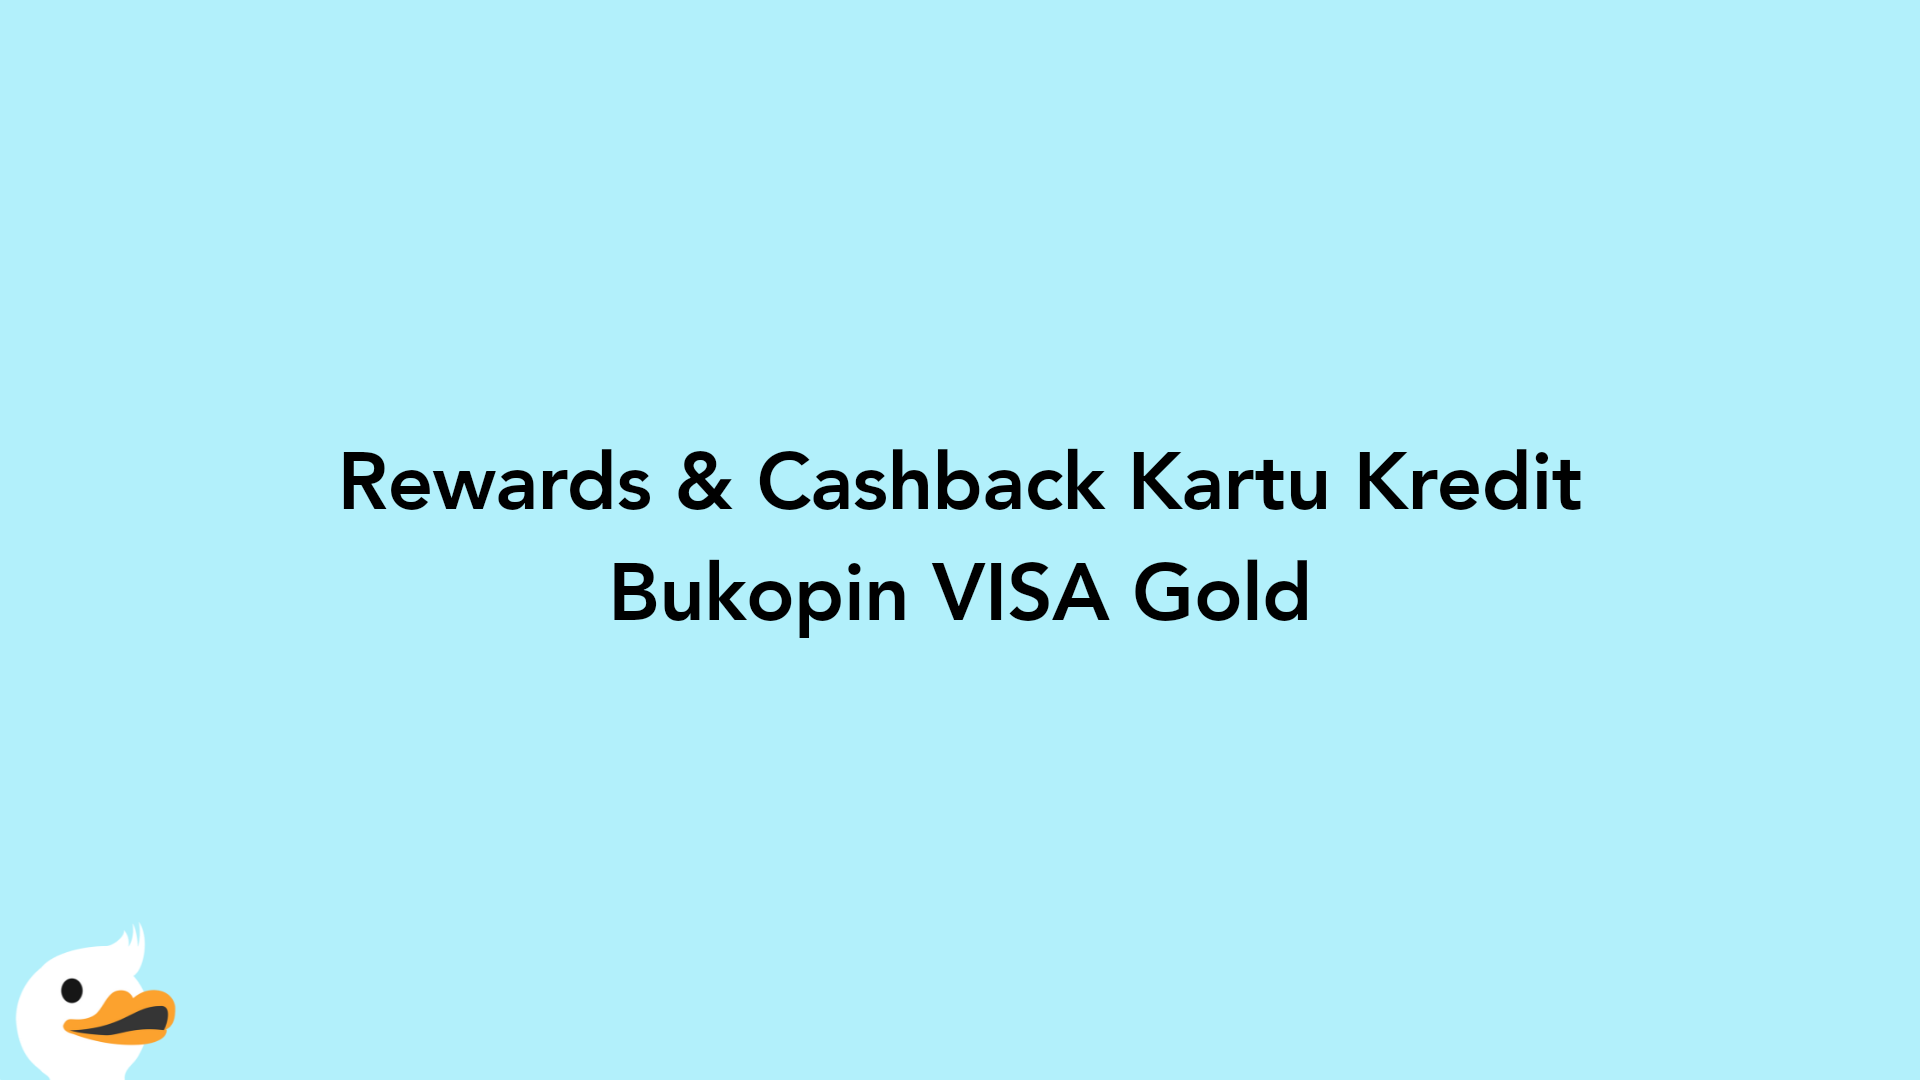 Rewards & Cashback Kartu Kredit Bukopin VISA Gold